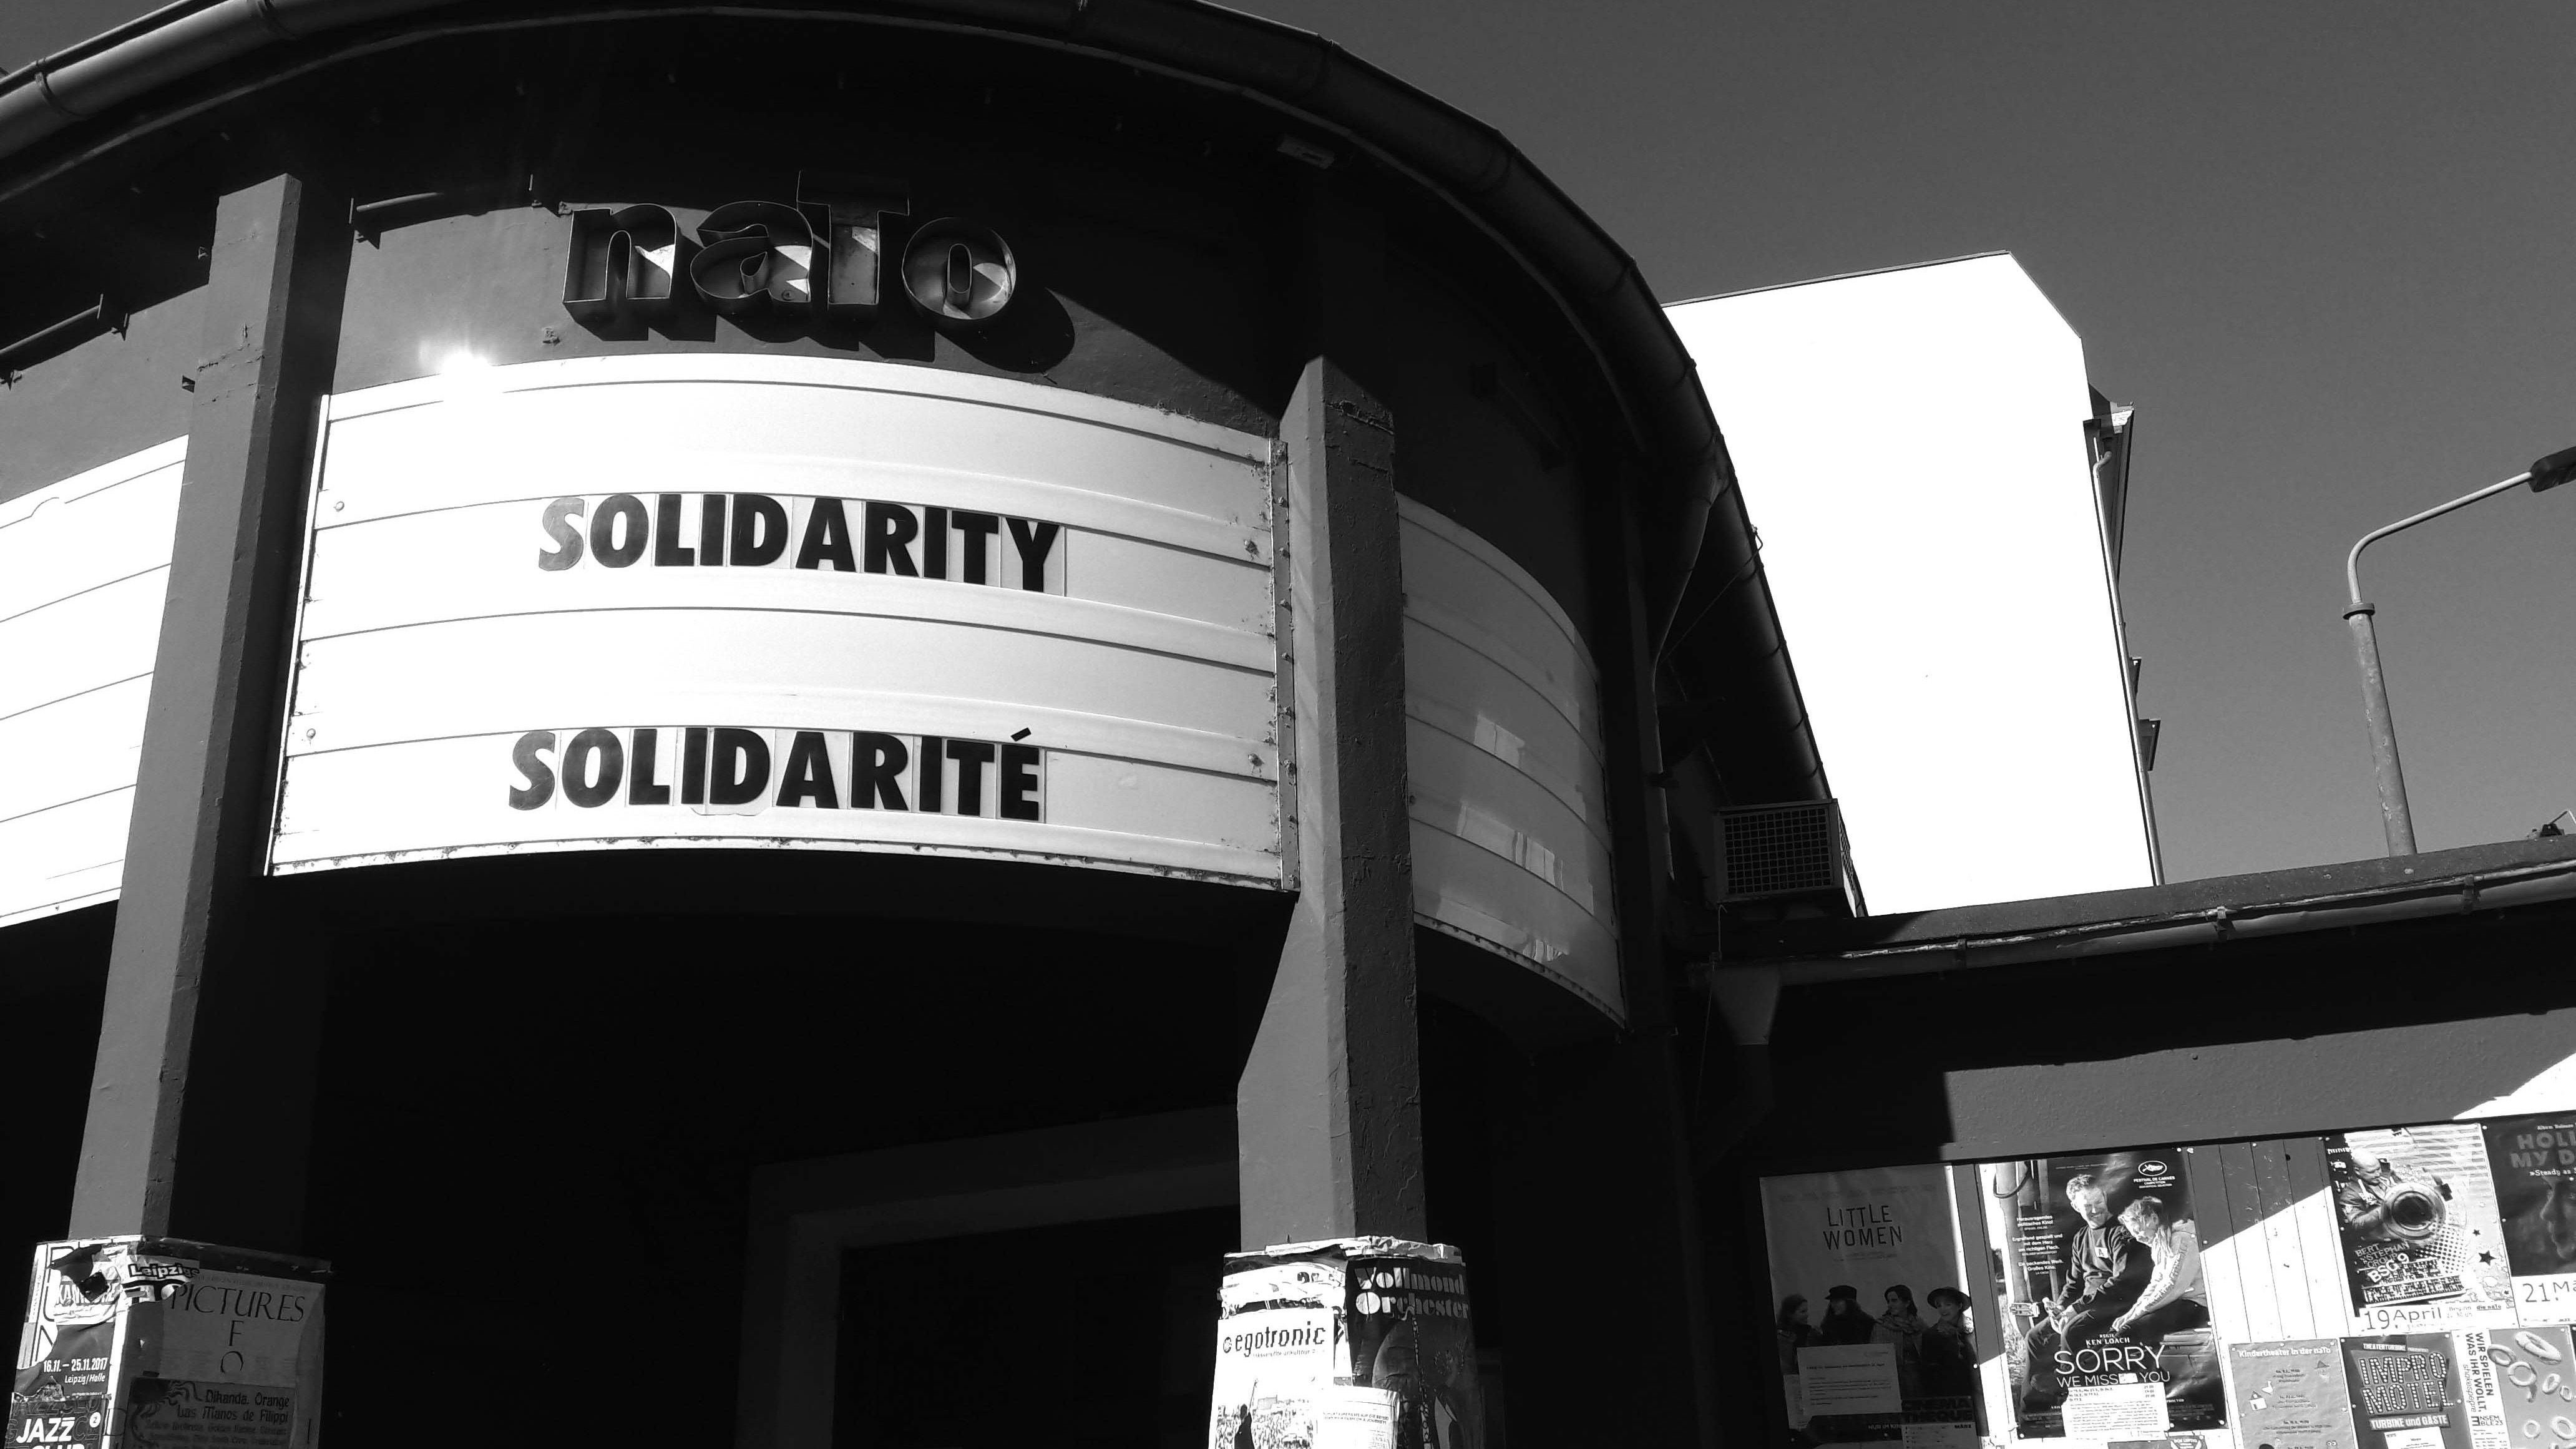 Schwarz-Weiß-Aufnahme der Spielstätte naTo von außen, an der Anzeige über dem Eingang ist der Aufruf "Solidarity / Solidarité" angeschlagen